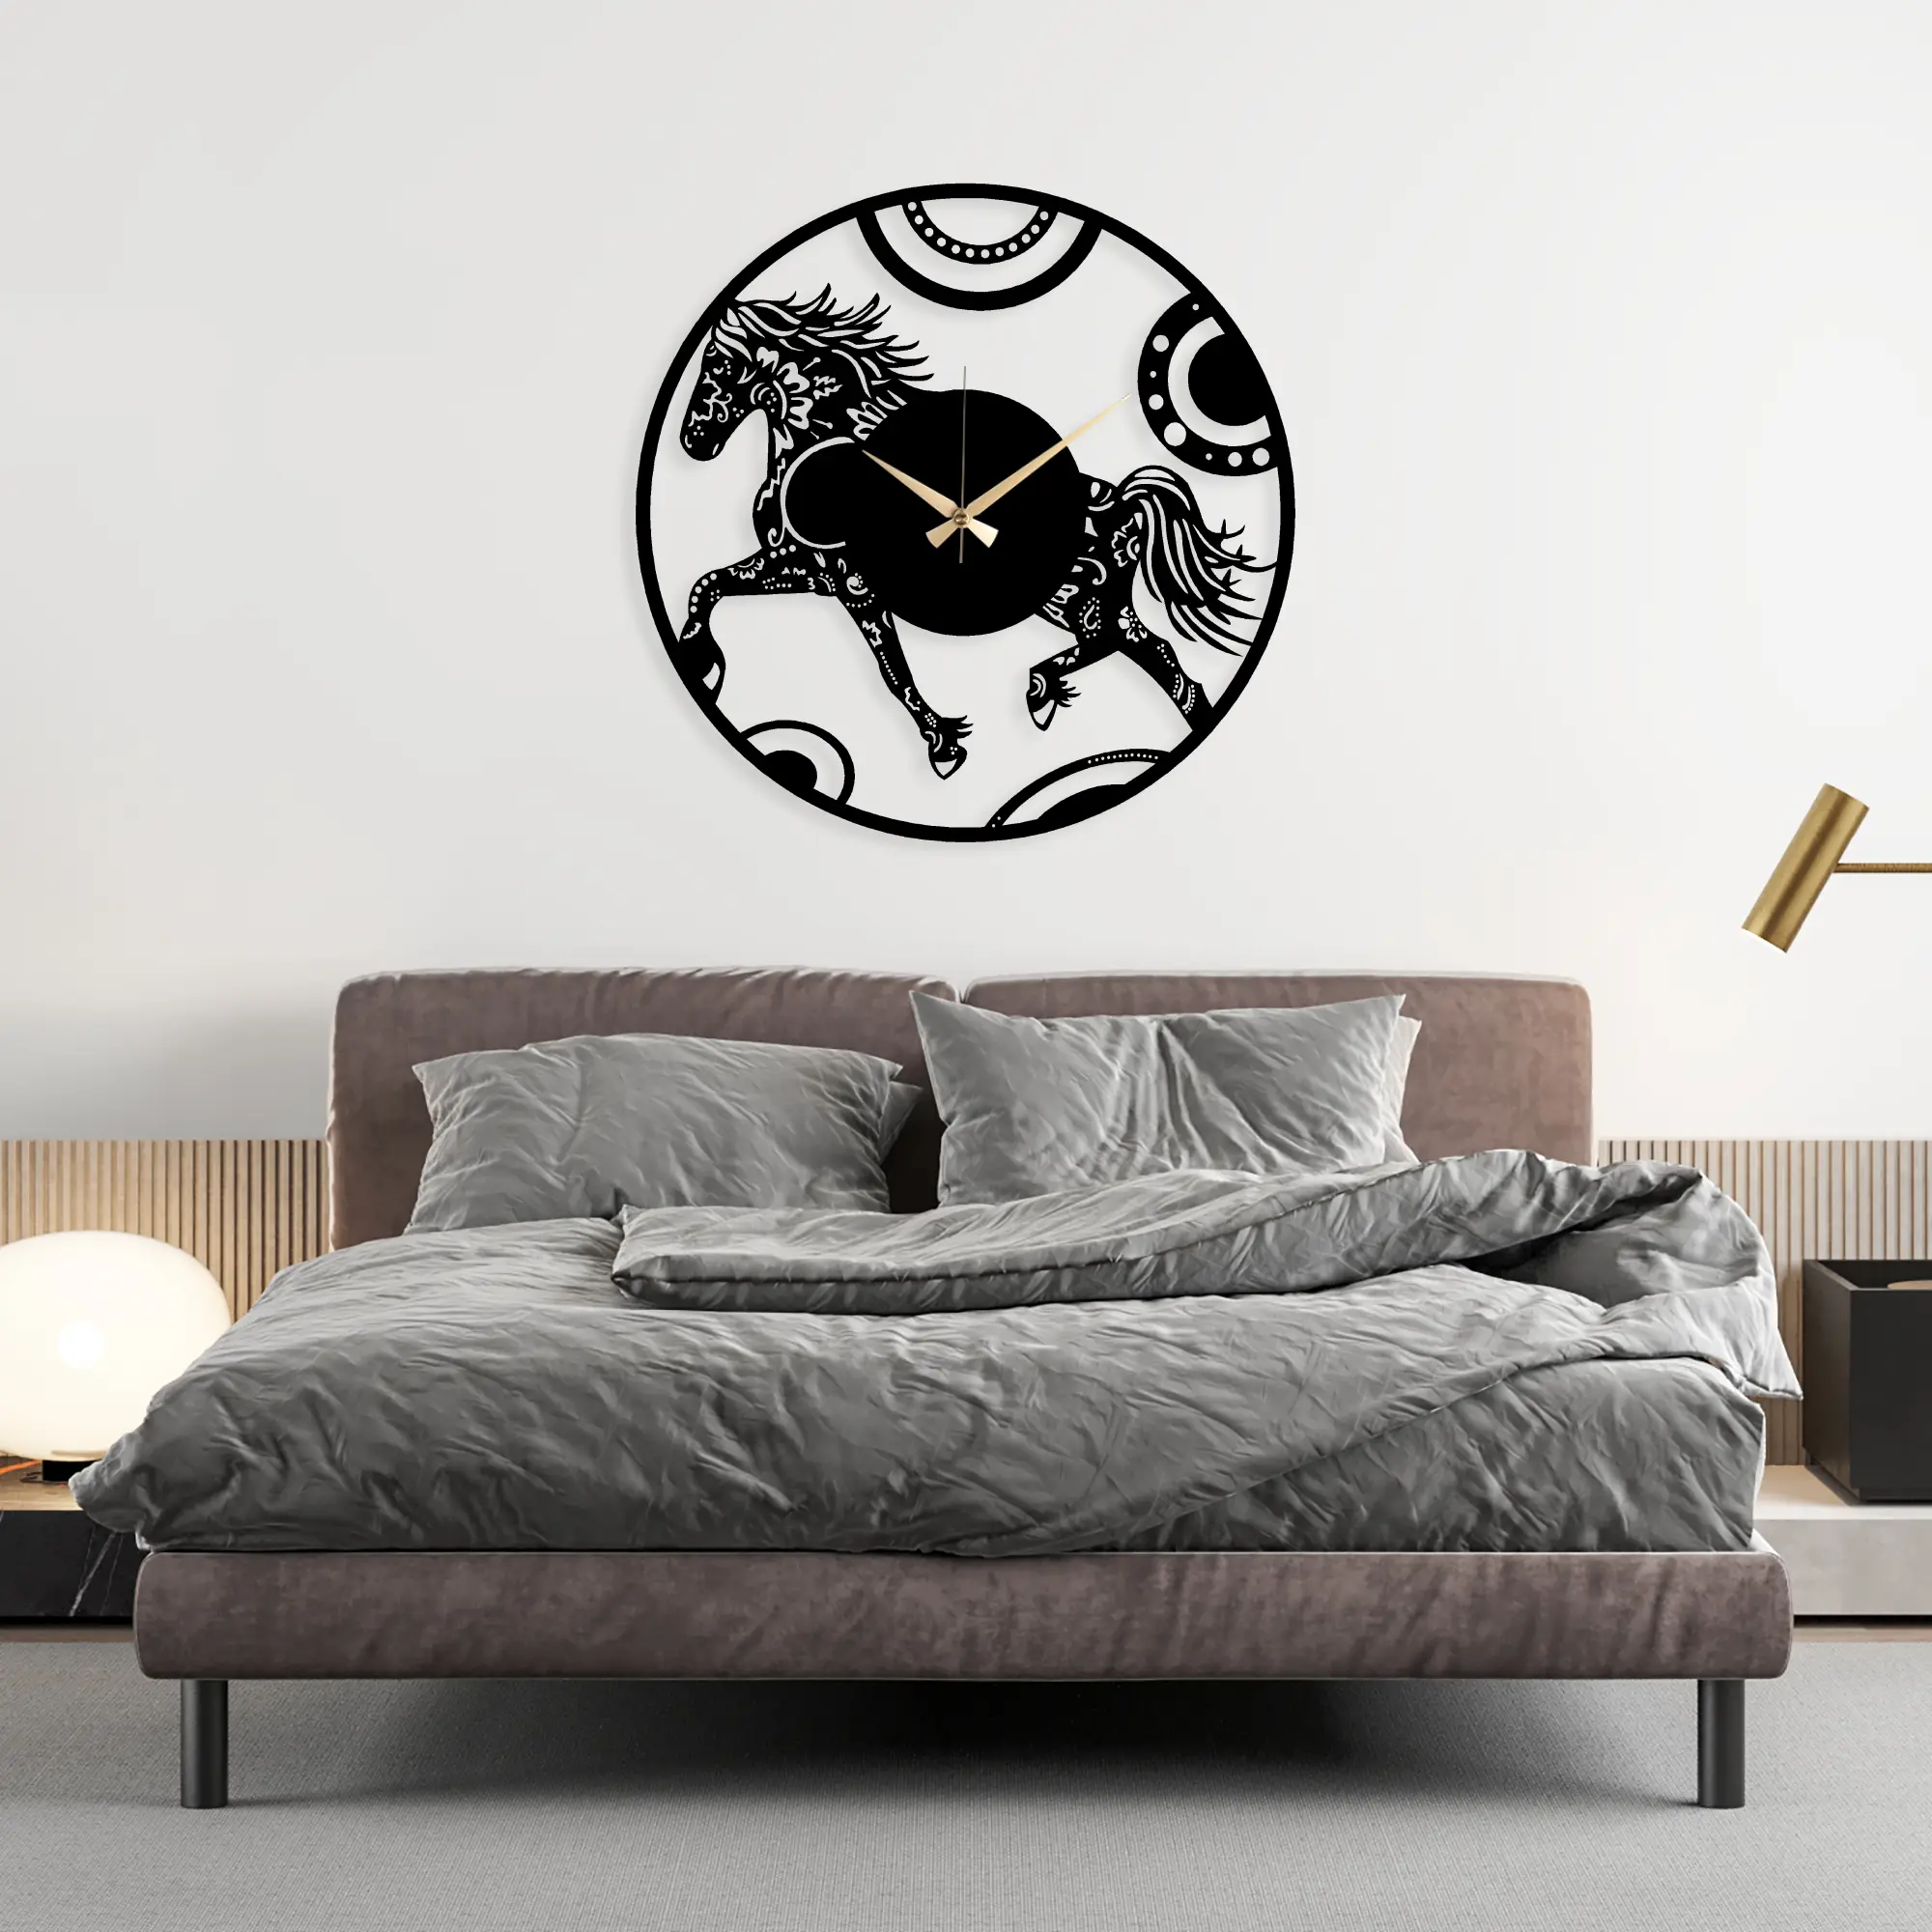 Hest Metal Clock